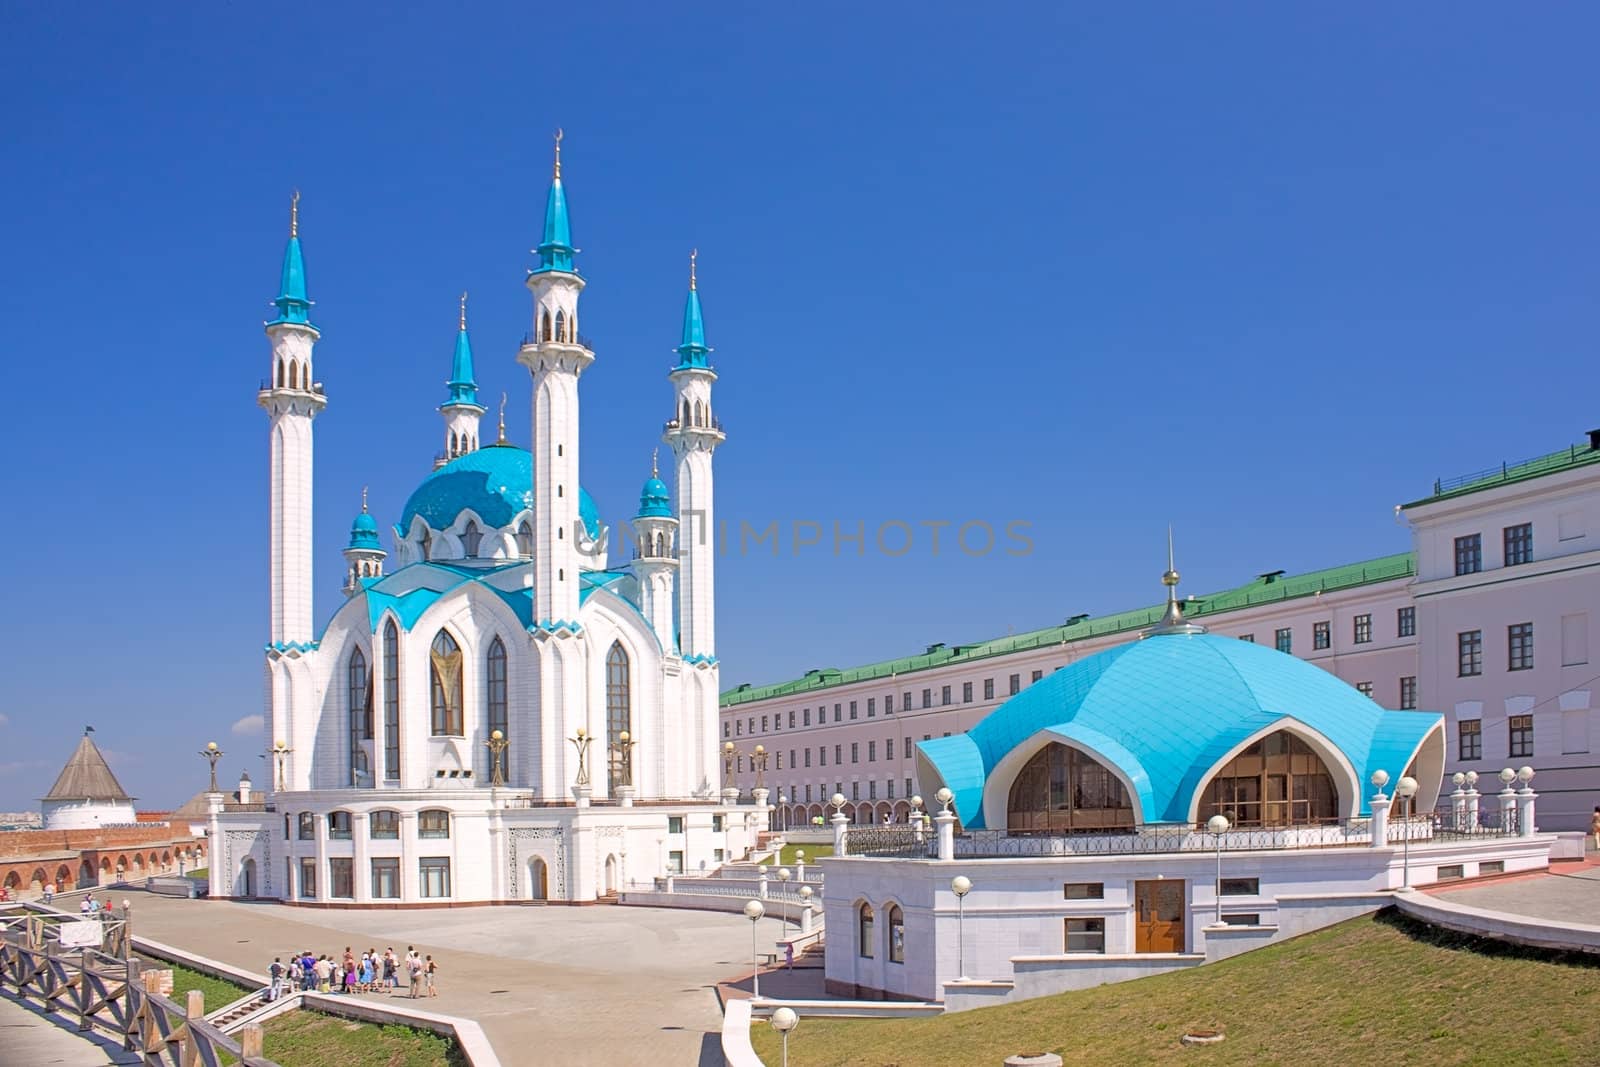 View of the beautiful Qolsharif Mosque in  Kremlin, Kazan, Russia.